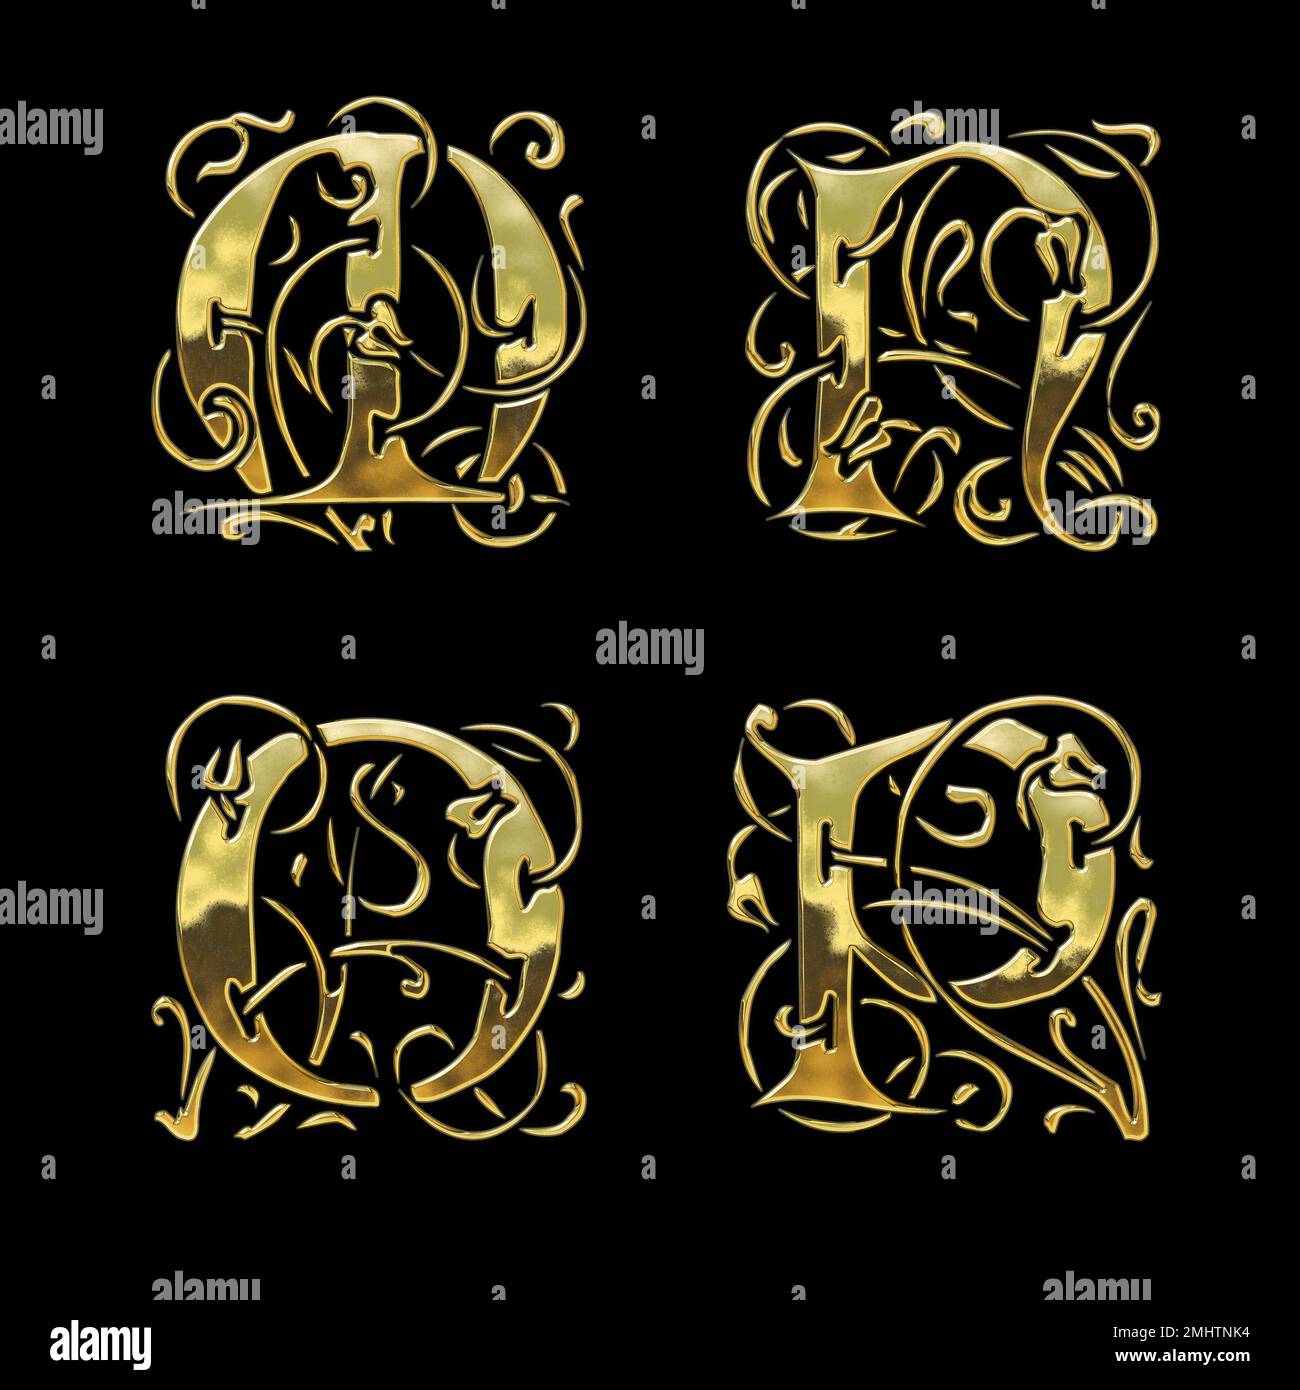 3D rendu de l'alphabet de police de style gothique doré - lettres M-P. Banque D'Images